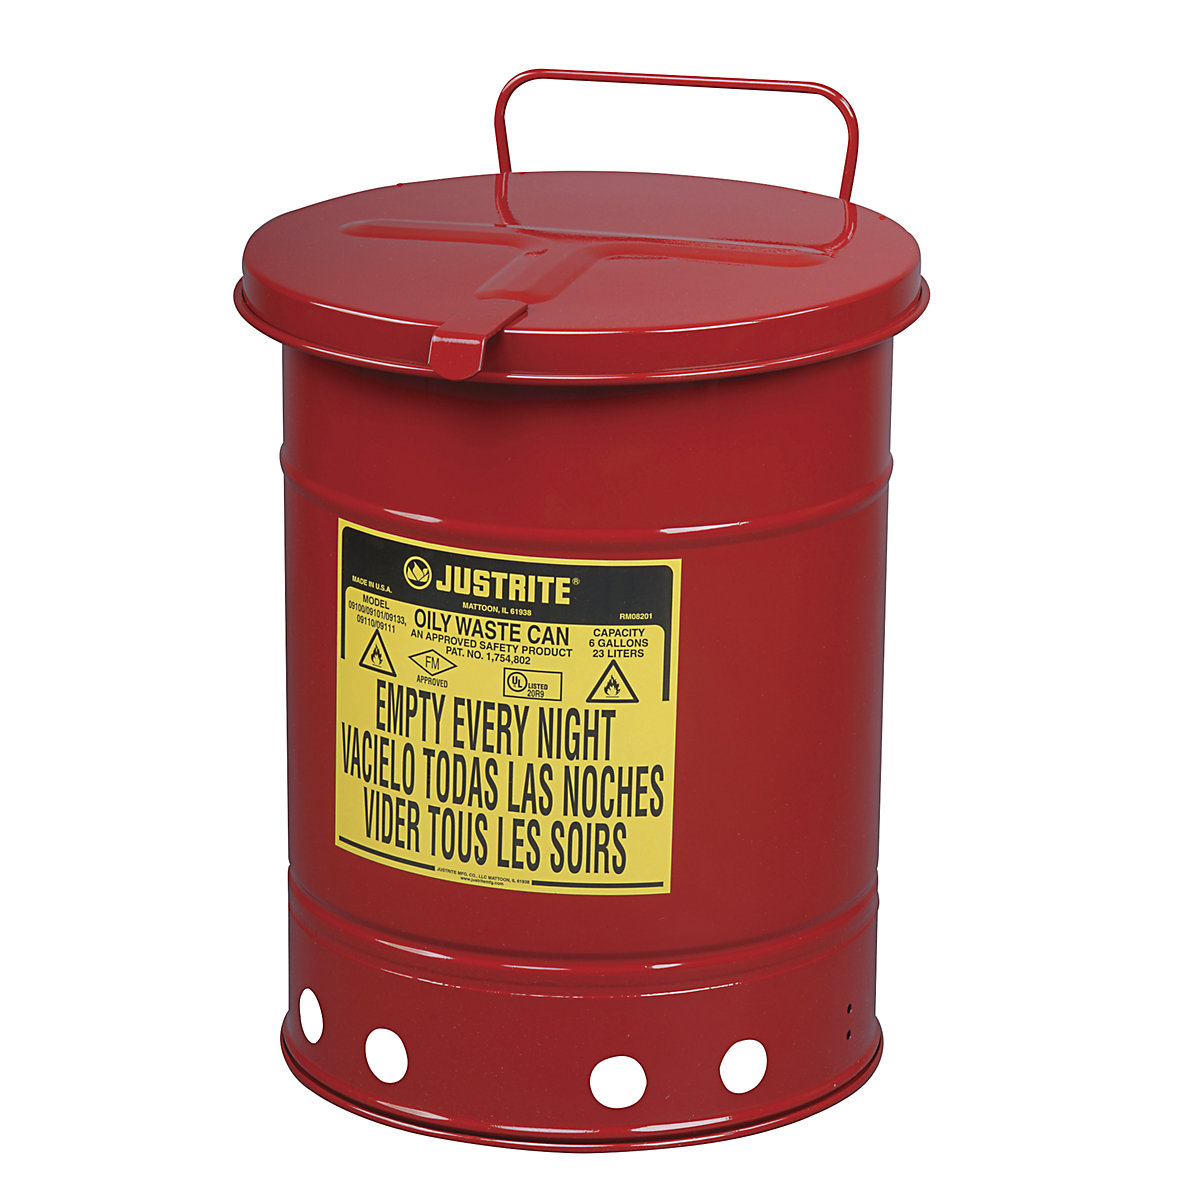 Bezpieczny pojemnik na odpady z blachy stalowej - Justrite